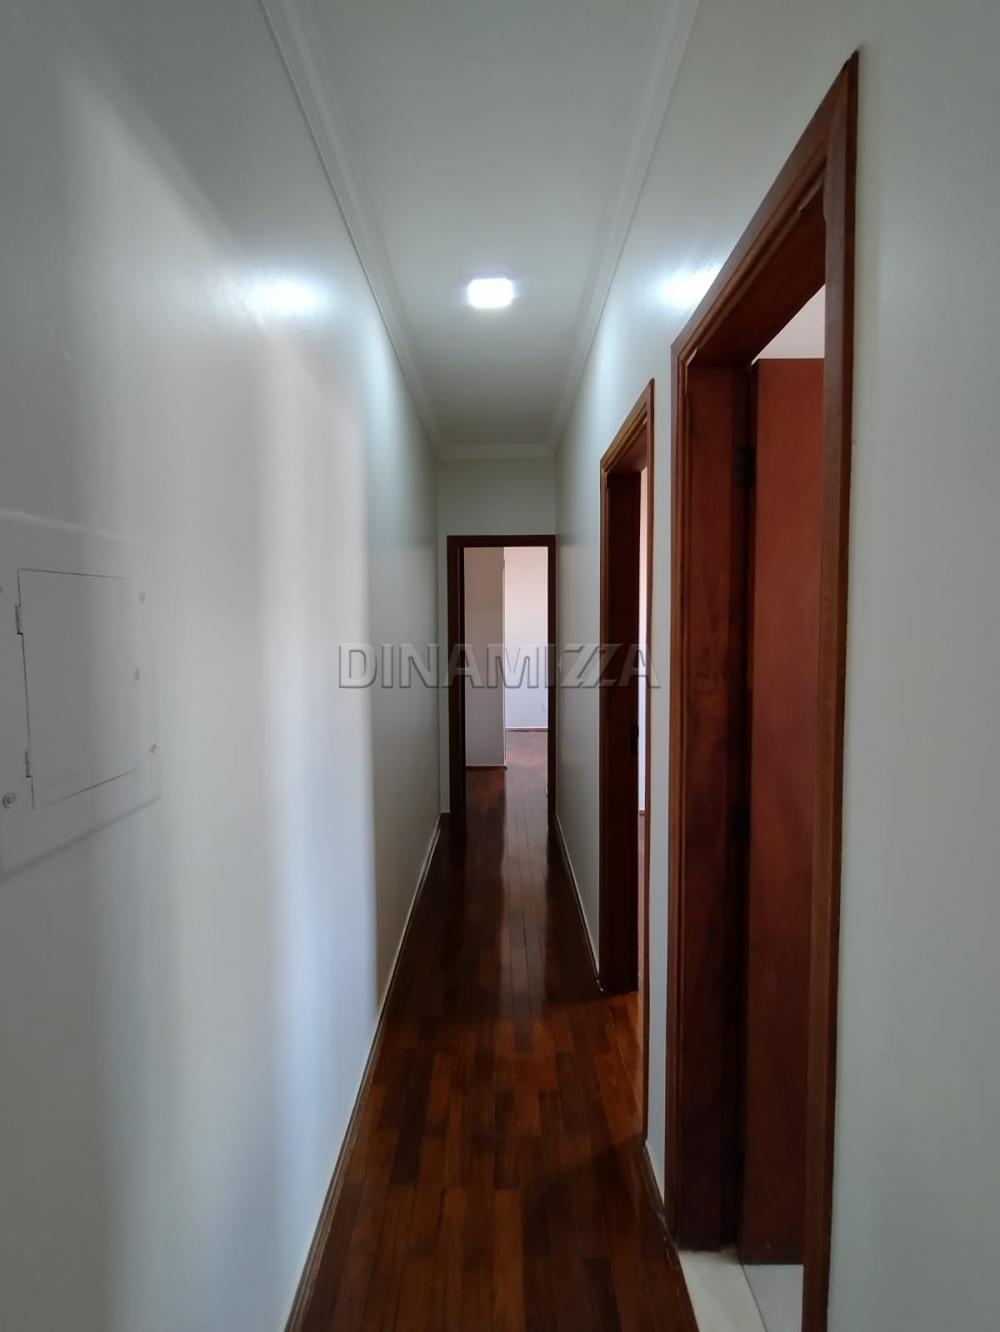 Comprar Apartamento / Padrão em Uberaba R$ 330.000,00 - Foto 7